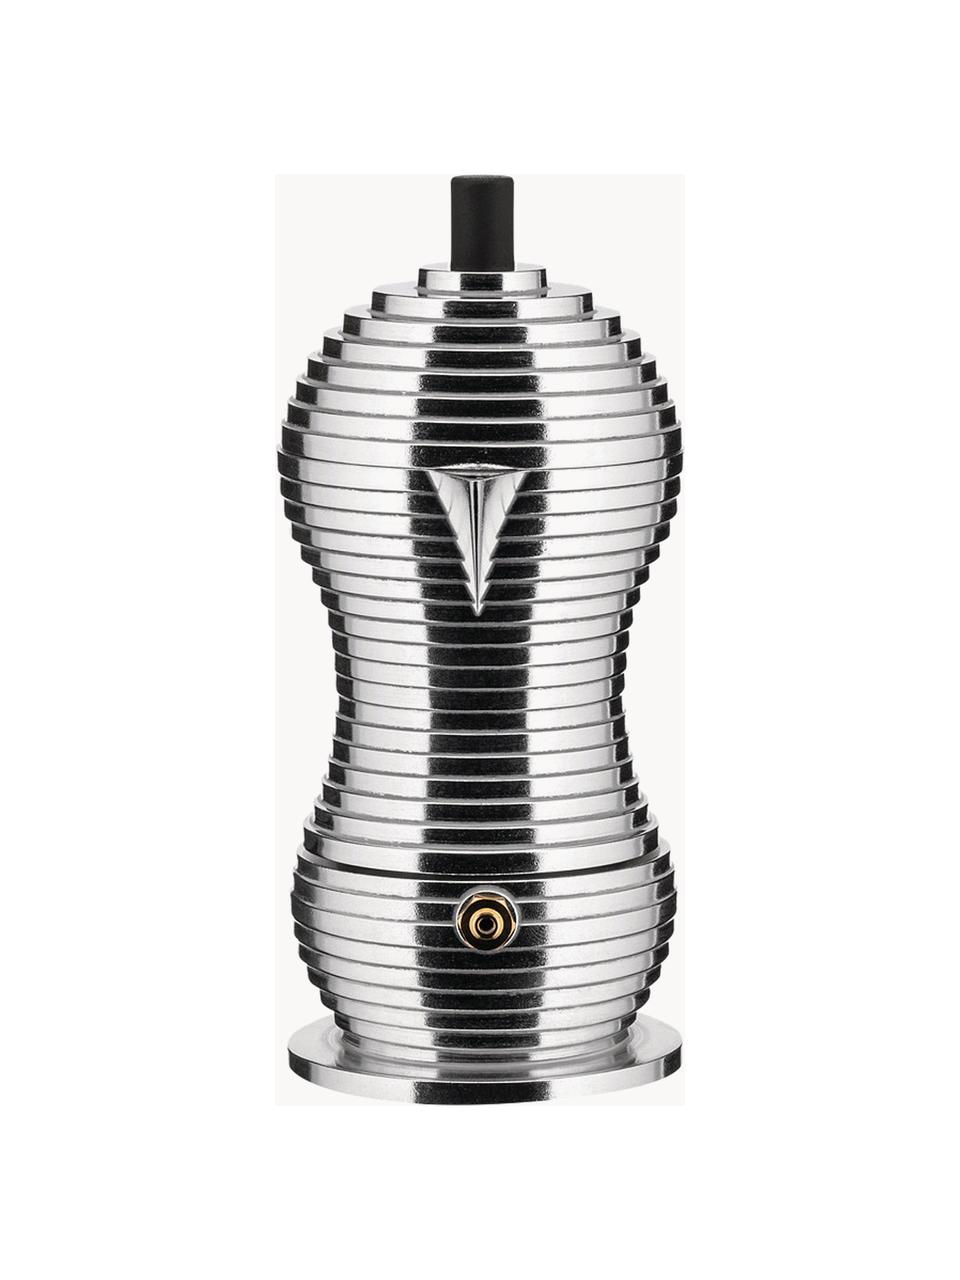 Espressokocher Pulcina, Gehäuse: Aluminiumguss, Griffe: Polyamid, Silberfarben, glänzend, B 13 x H 17 cm, für eine Tasse